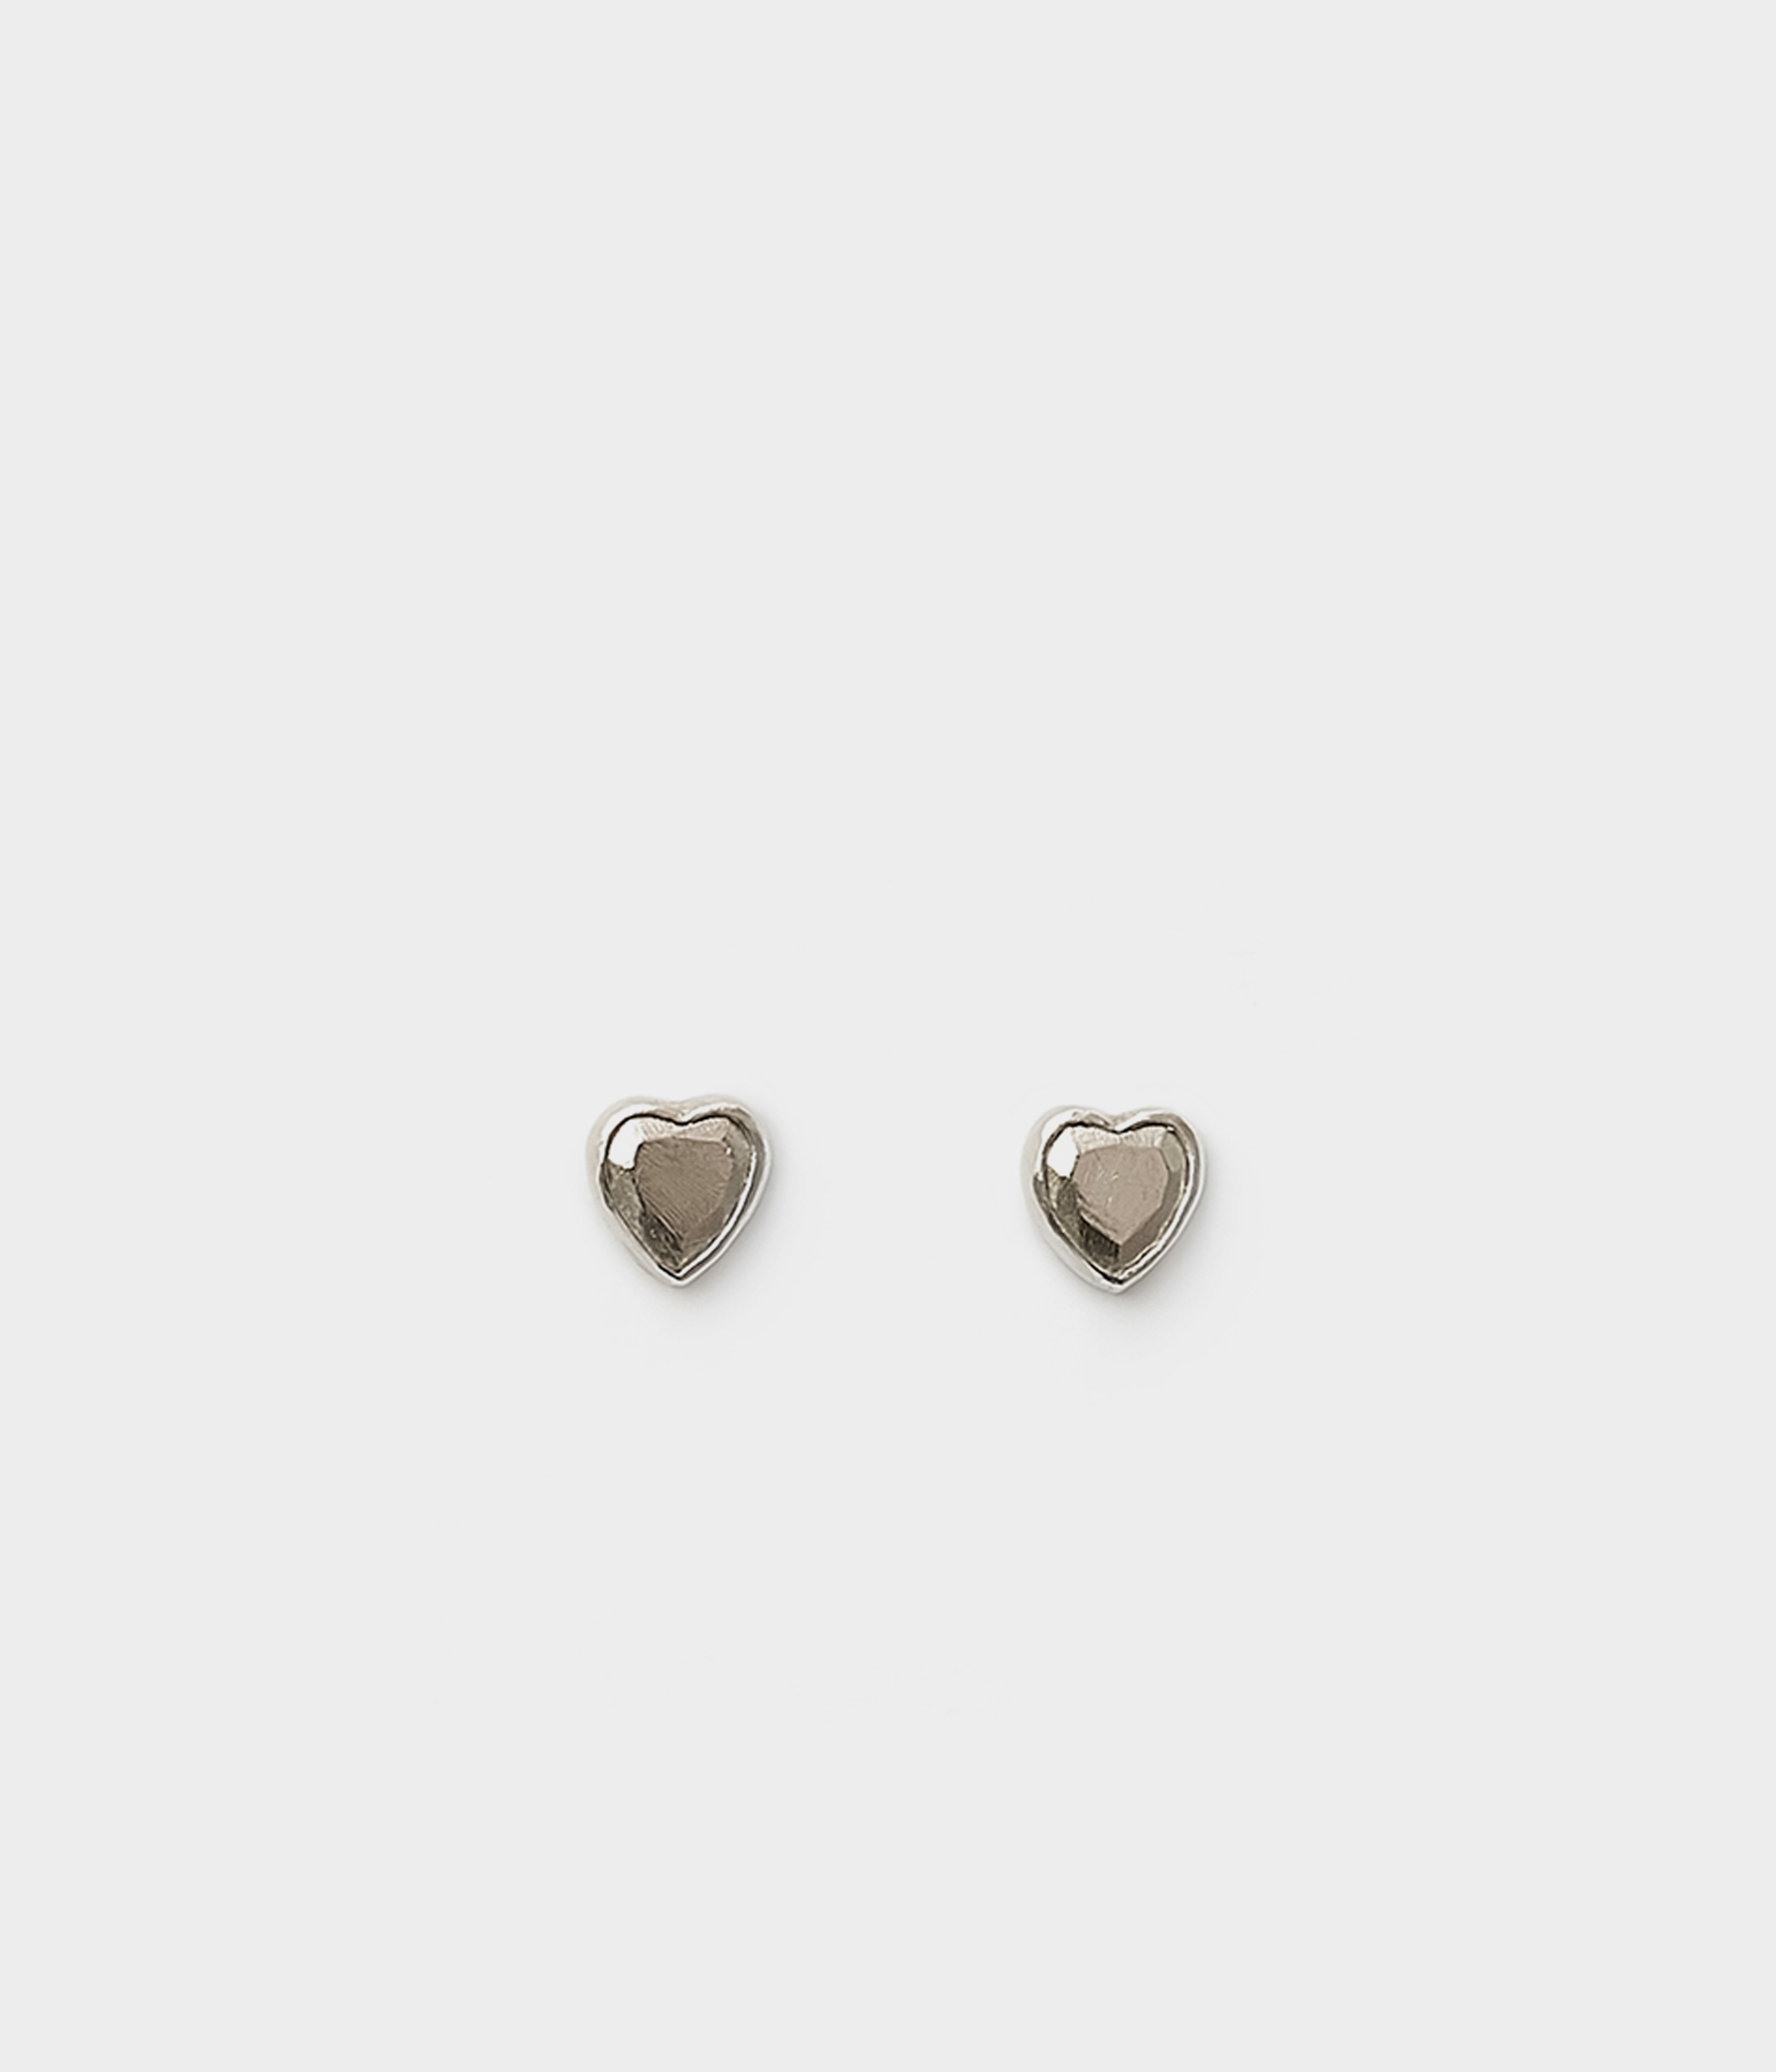 Heart stud earrings - SILVER